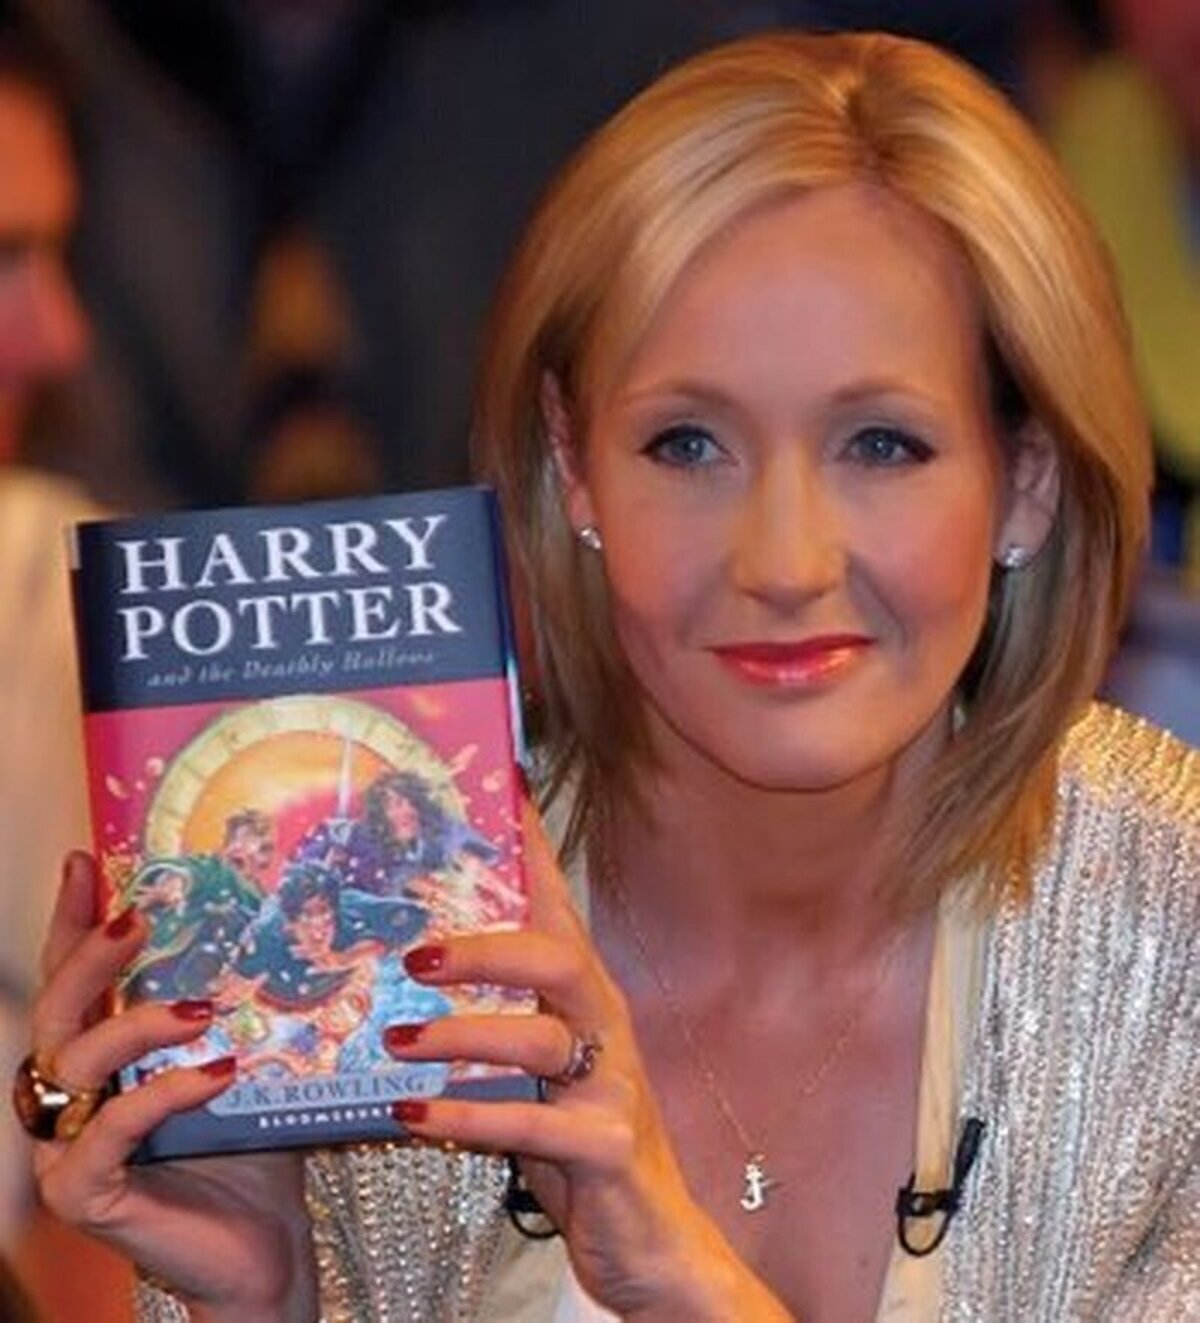 21 de julio de 2007: Hace 13 años, se publica “Harry Potter y las Reliquias de la Muerte”.